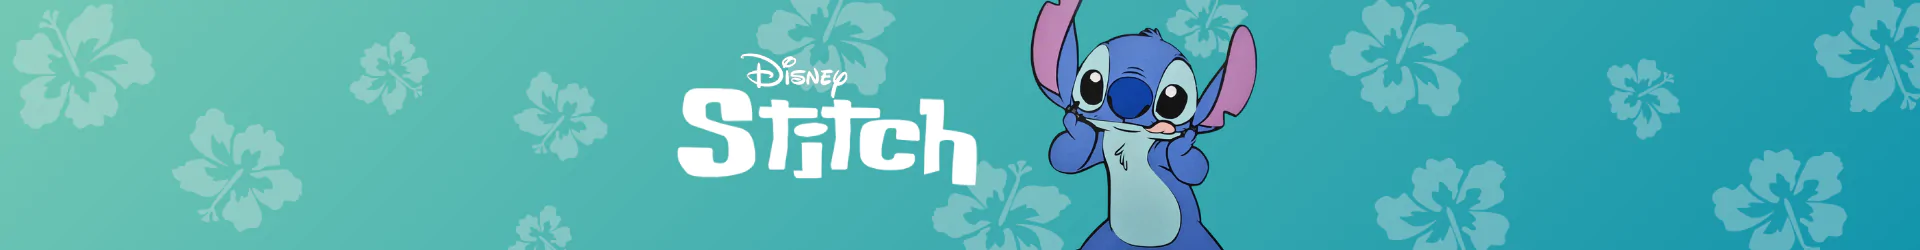 Stitch zubehöre für spielekonsolen banner